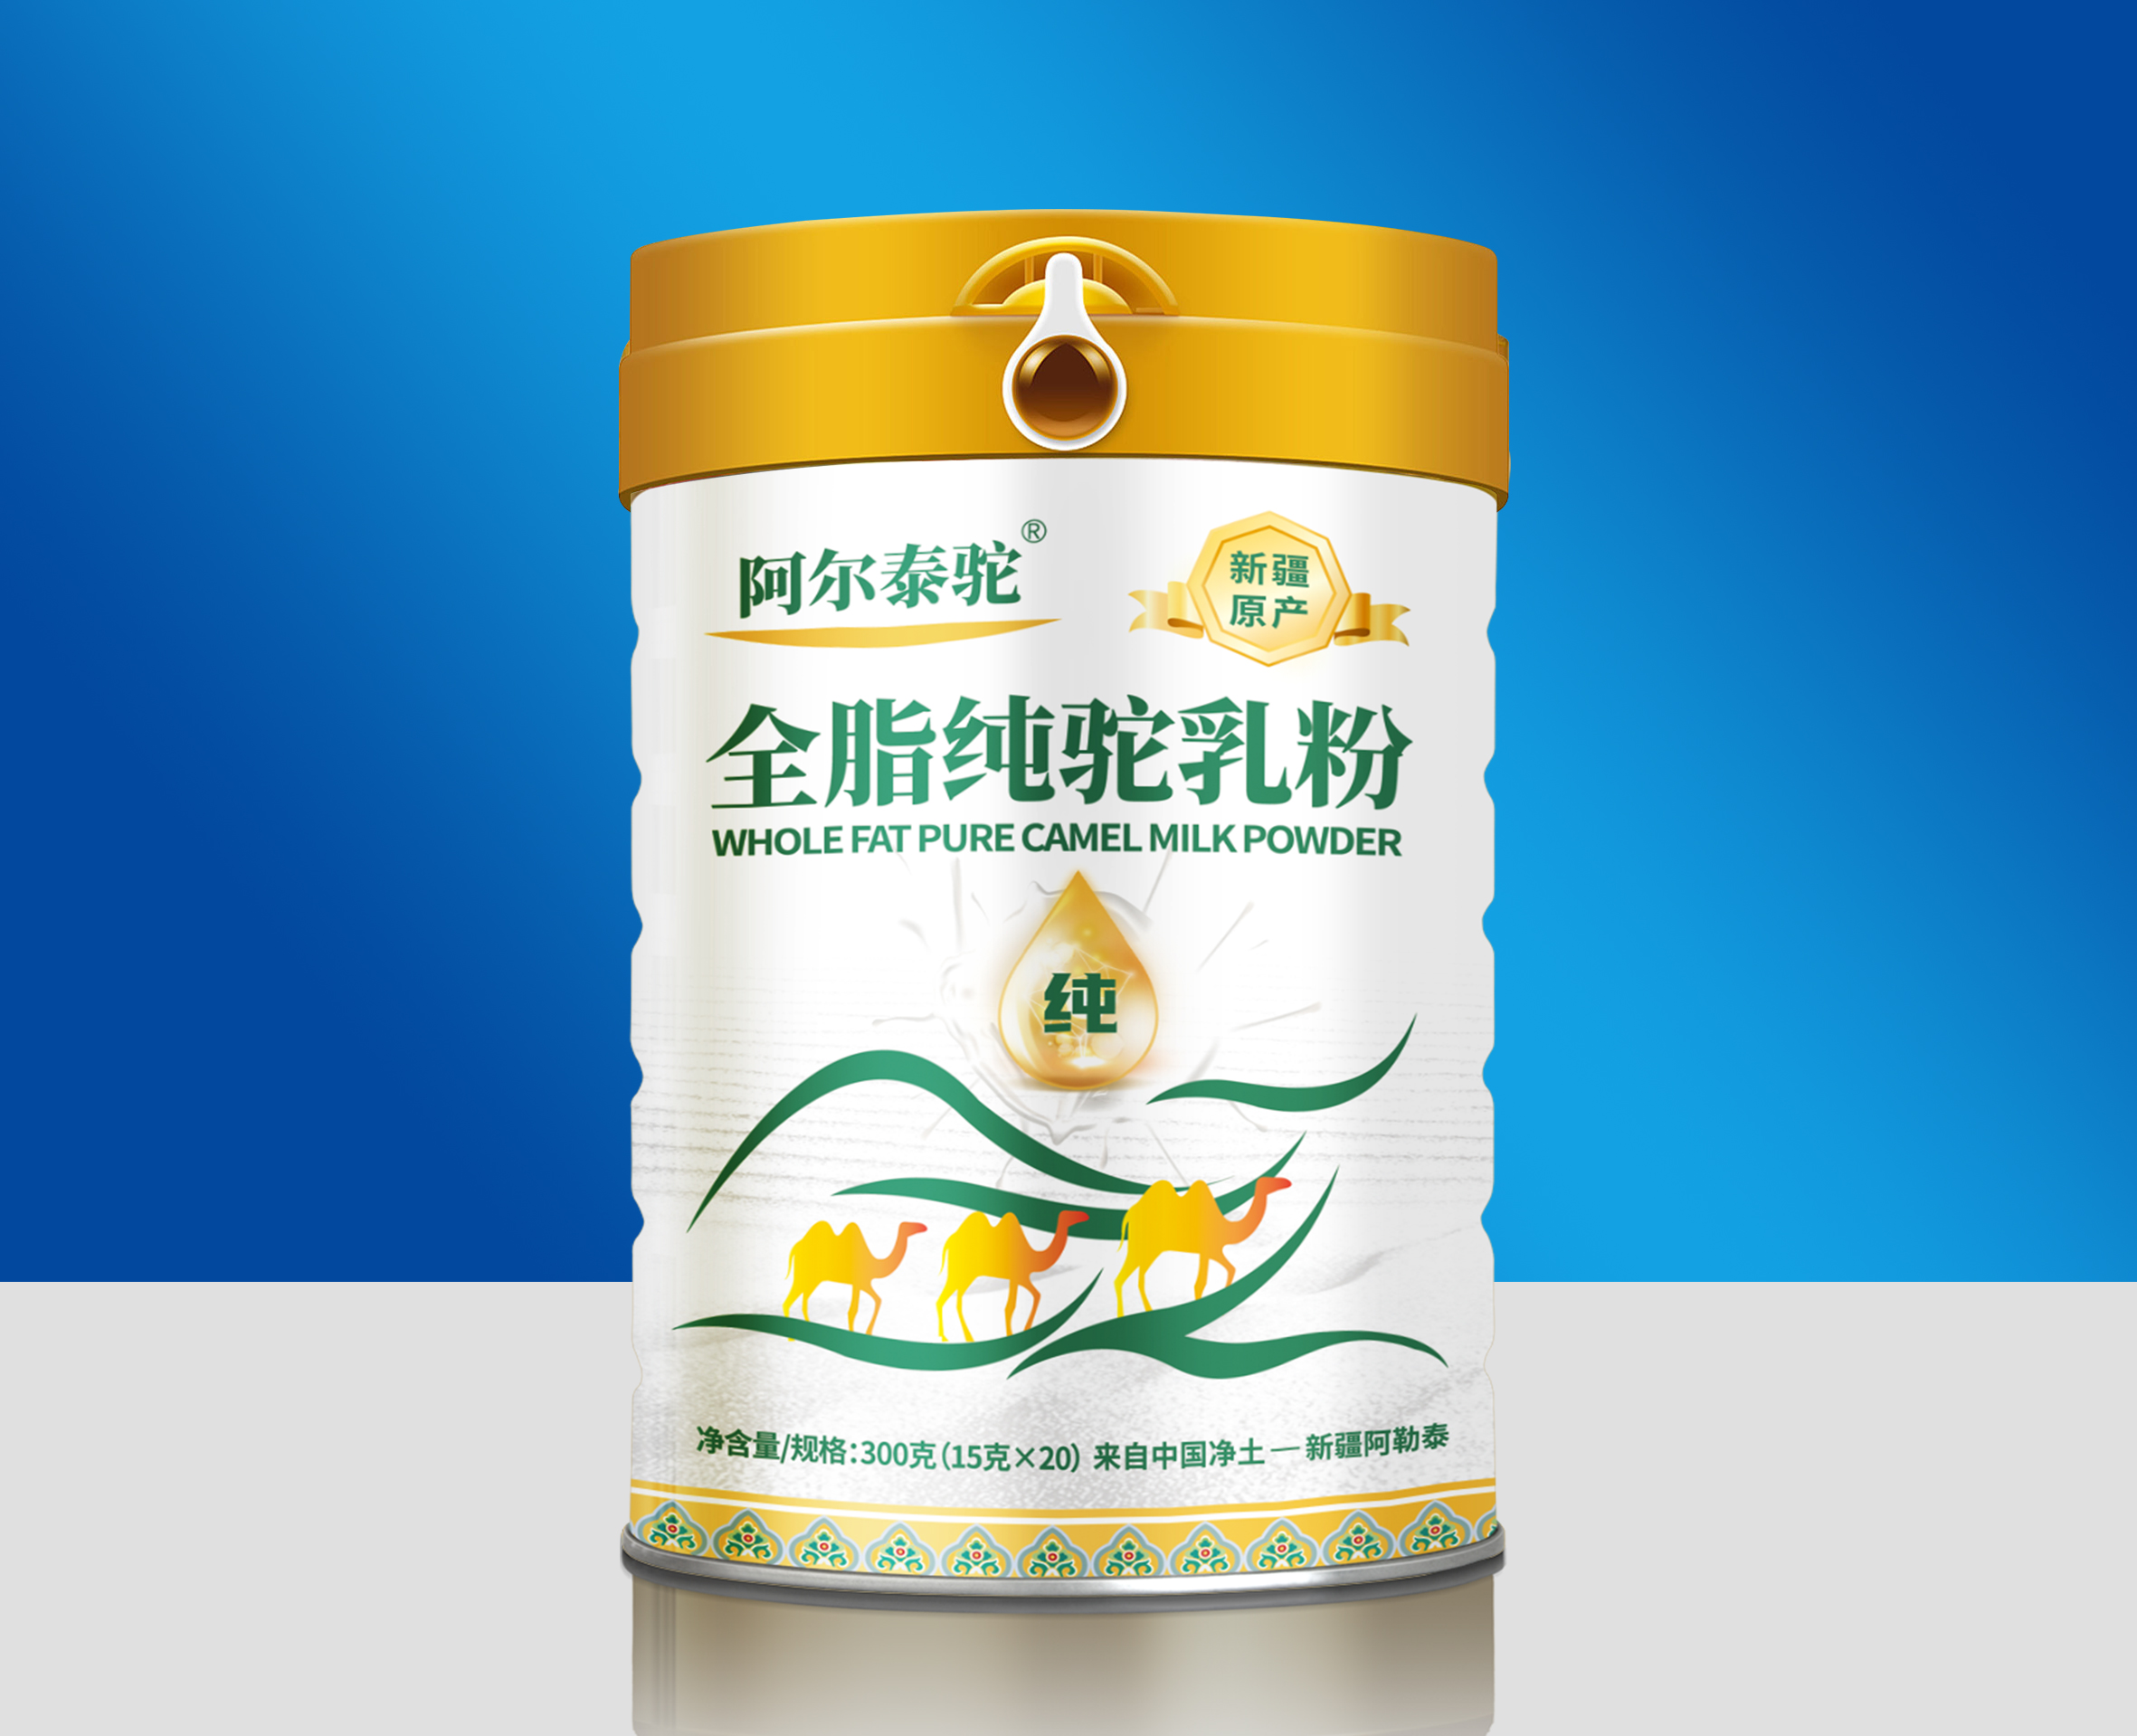 阿尔泰驼全脂驼乳粉原产自新疆